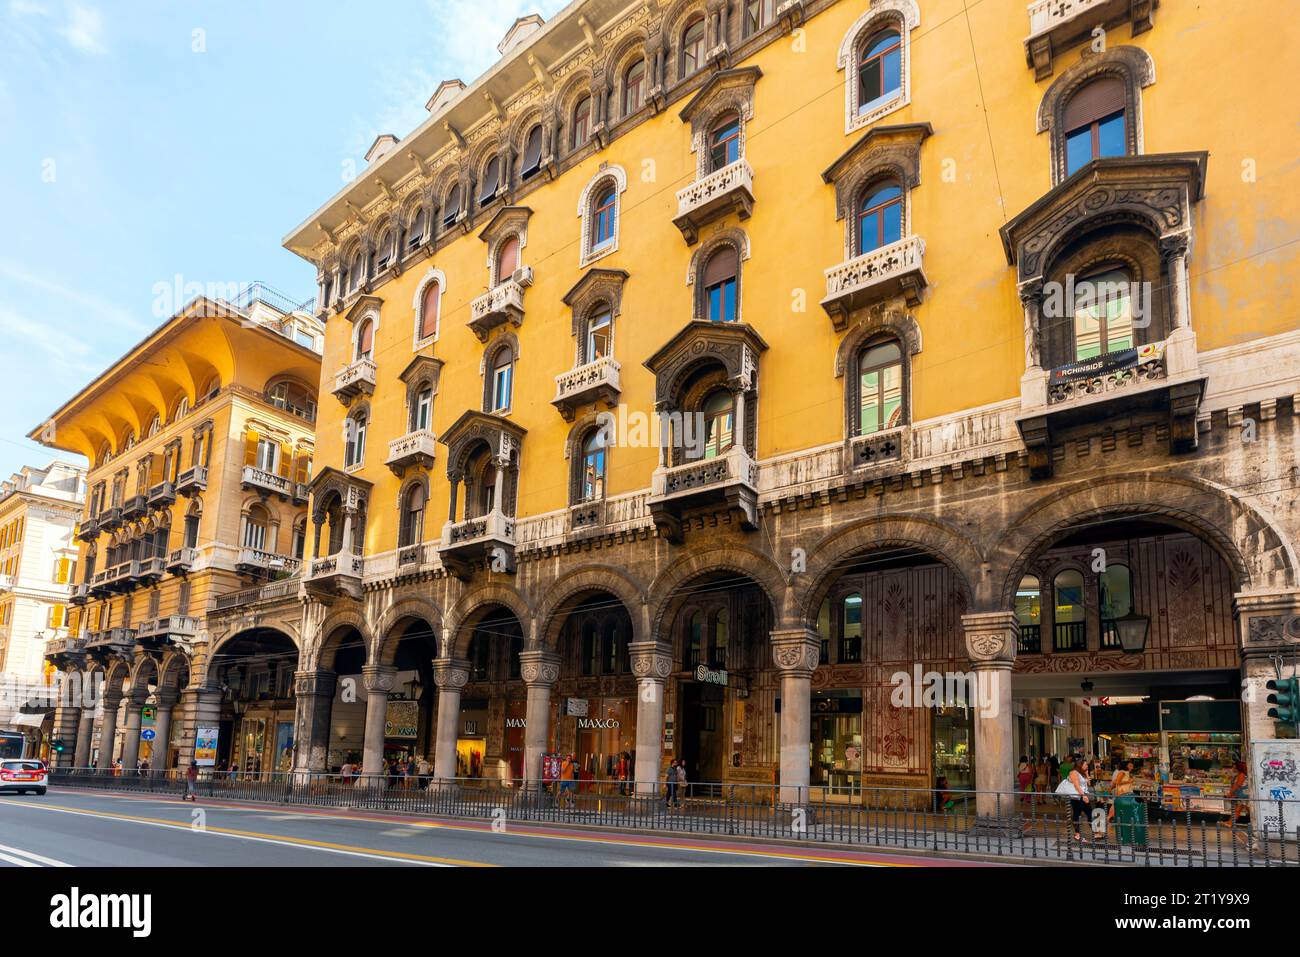 Edificio di lusso sul lato sud di via XX settembre (226 via XX settembre), centro di Genova, Italia. Foto Stock